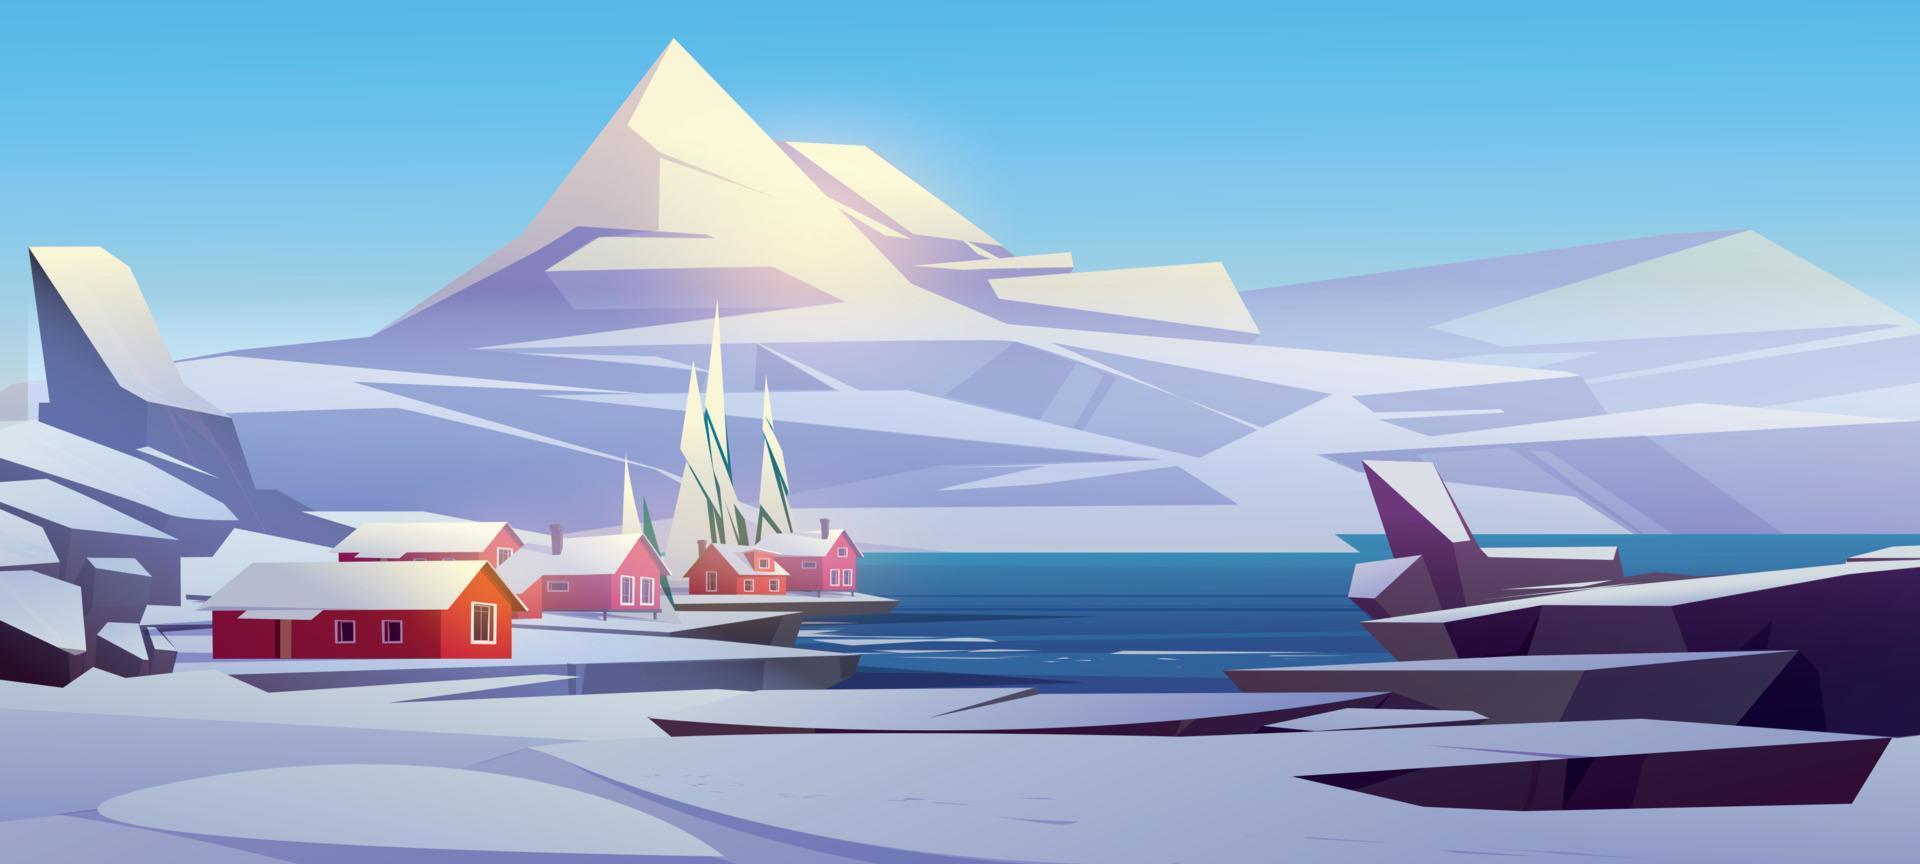 paisaje de invierno escena de pueblo nórdico escandinavo vector